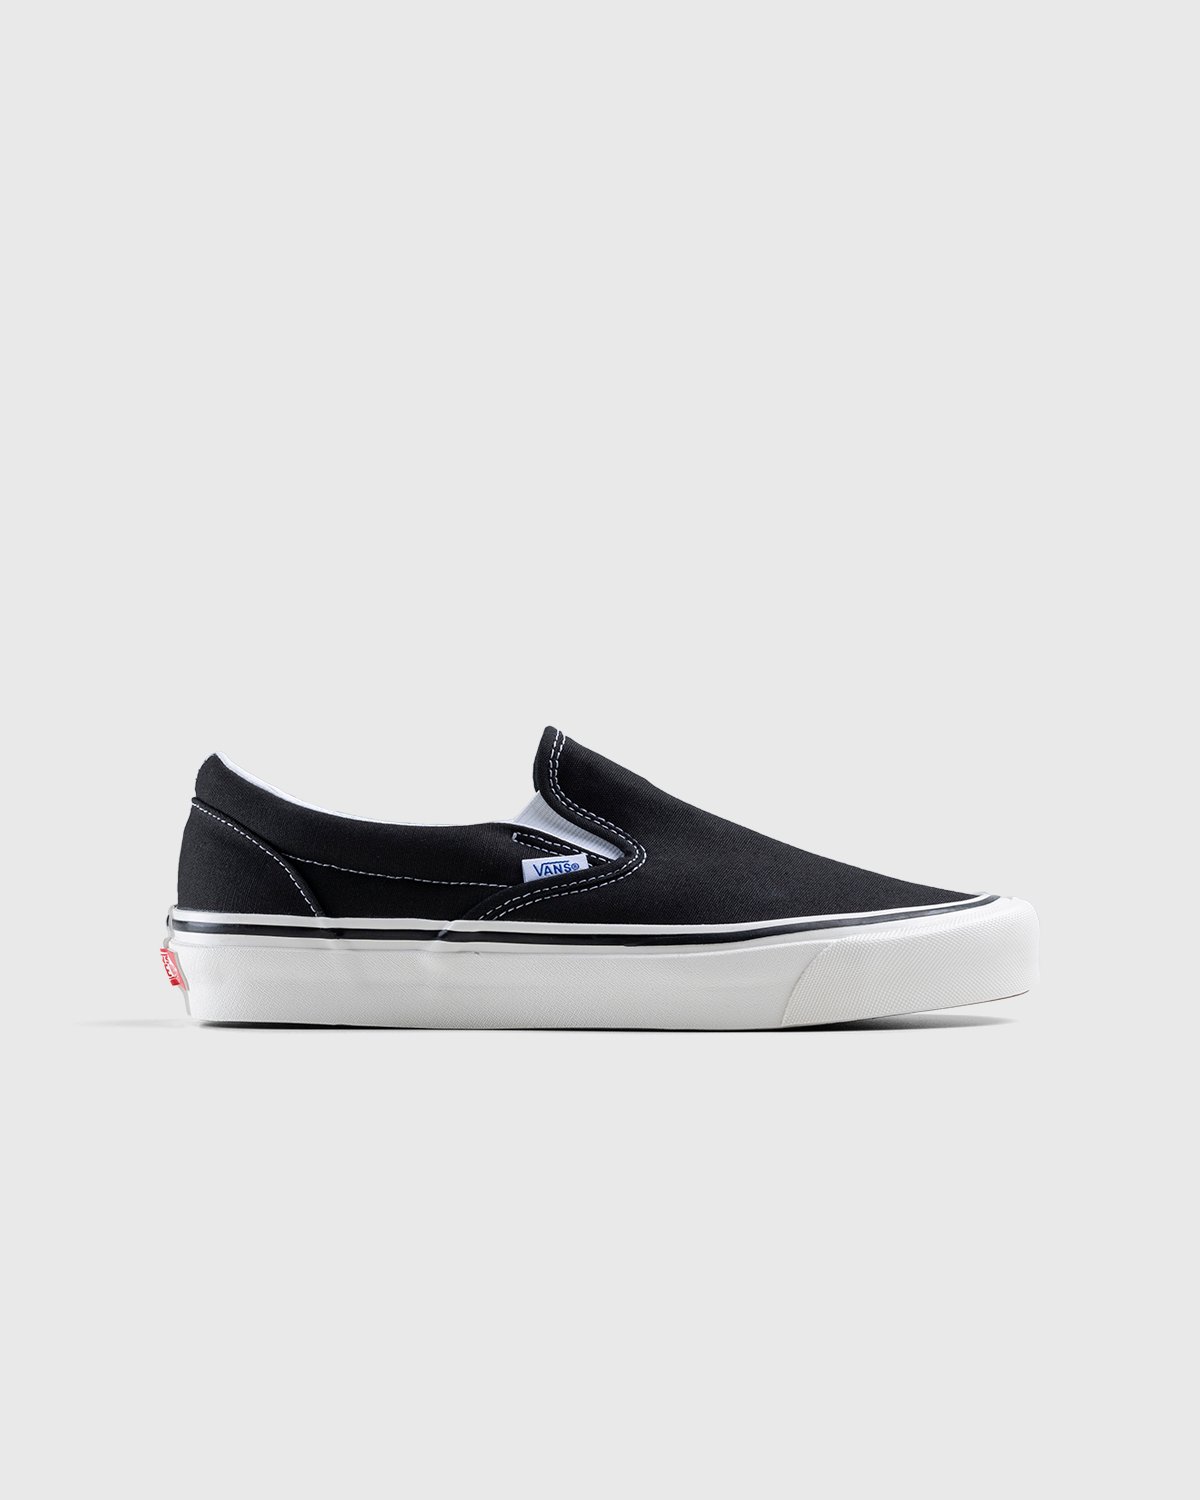 Vans - Anaheim Factory Classic Slip-On 98 DX OG Black - Footwear - Black - Image 1